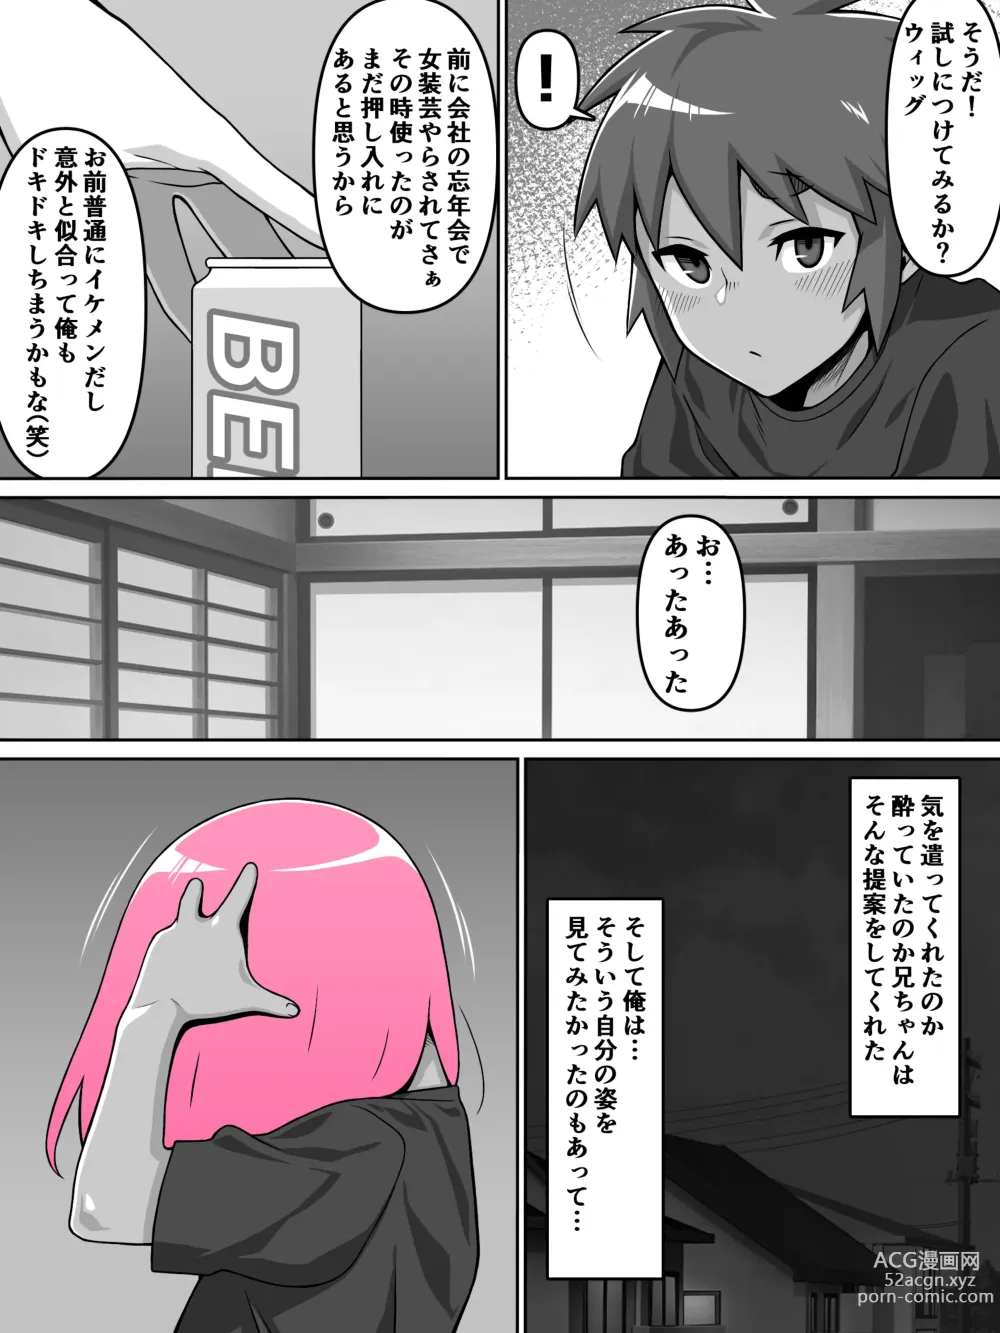 Page 12 of doujinshi Oi Ai